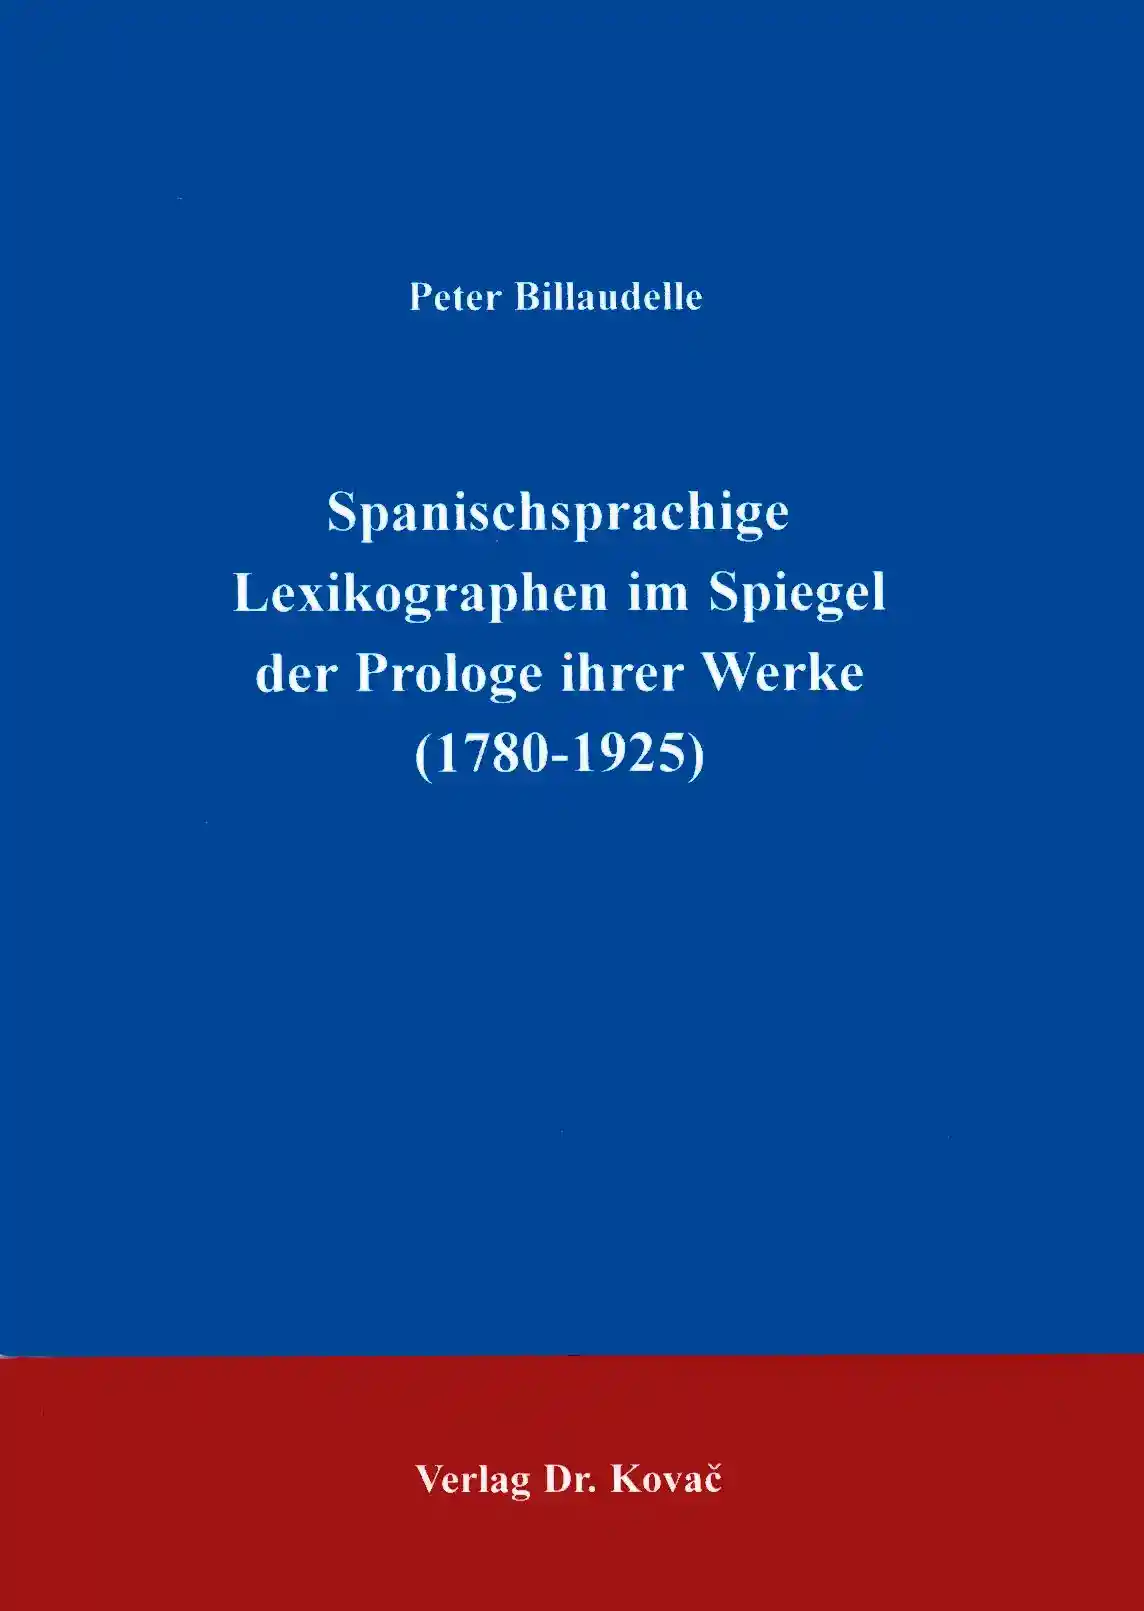 Spanischsprachige Lexikographen im Spiegel der Prologe ihrer Werke (1780-1925) (Forschungsarbeit)